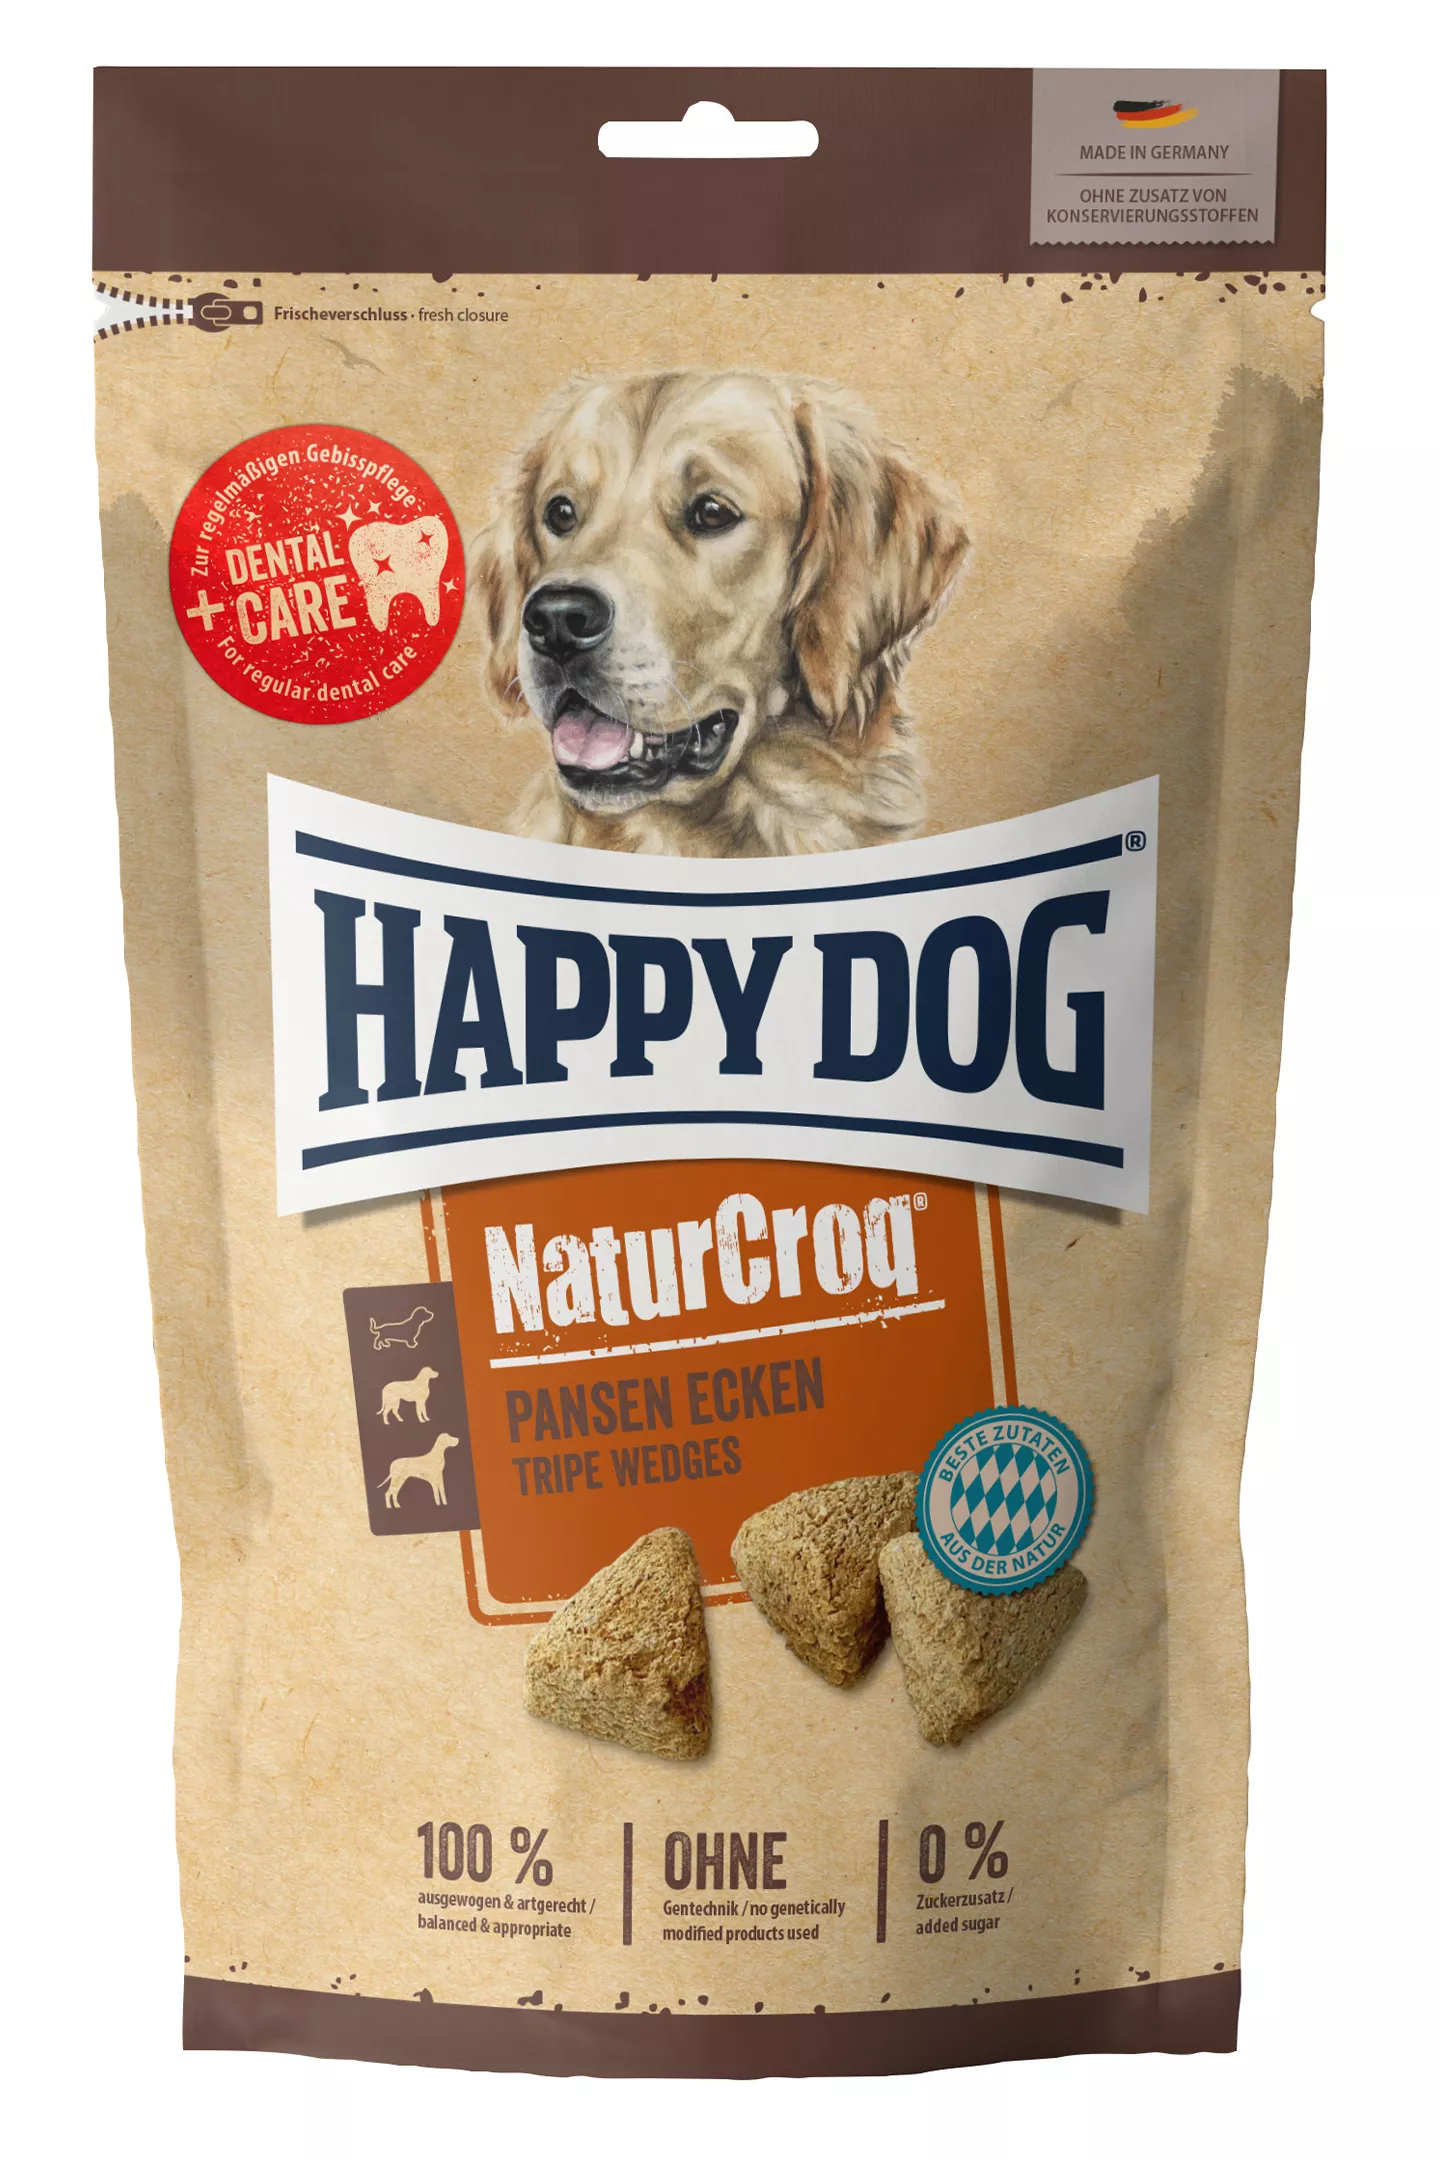 Happy Dog NaturCroq 700 g Pansen-Ecken